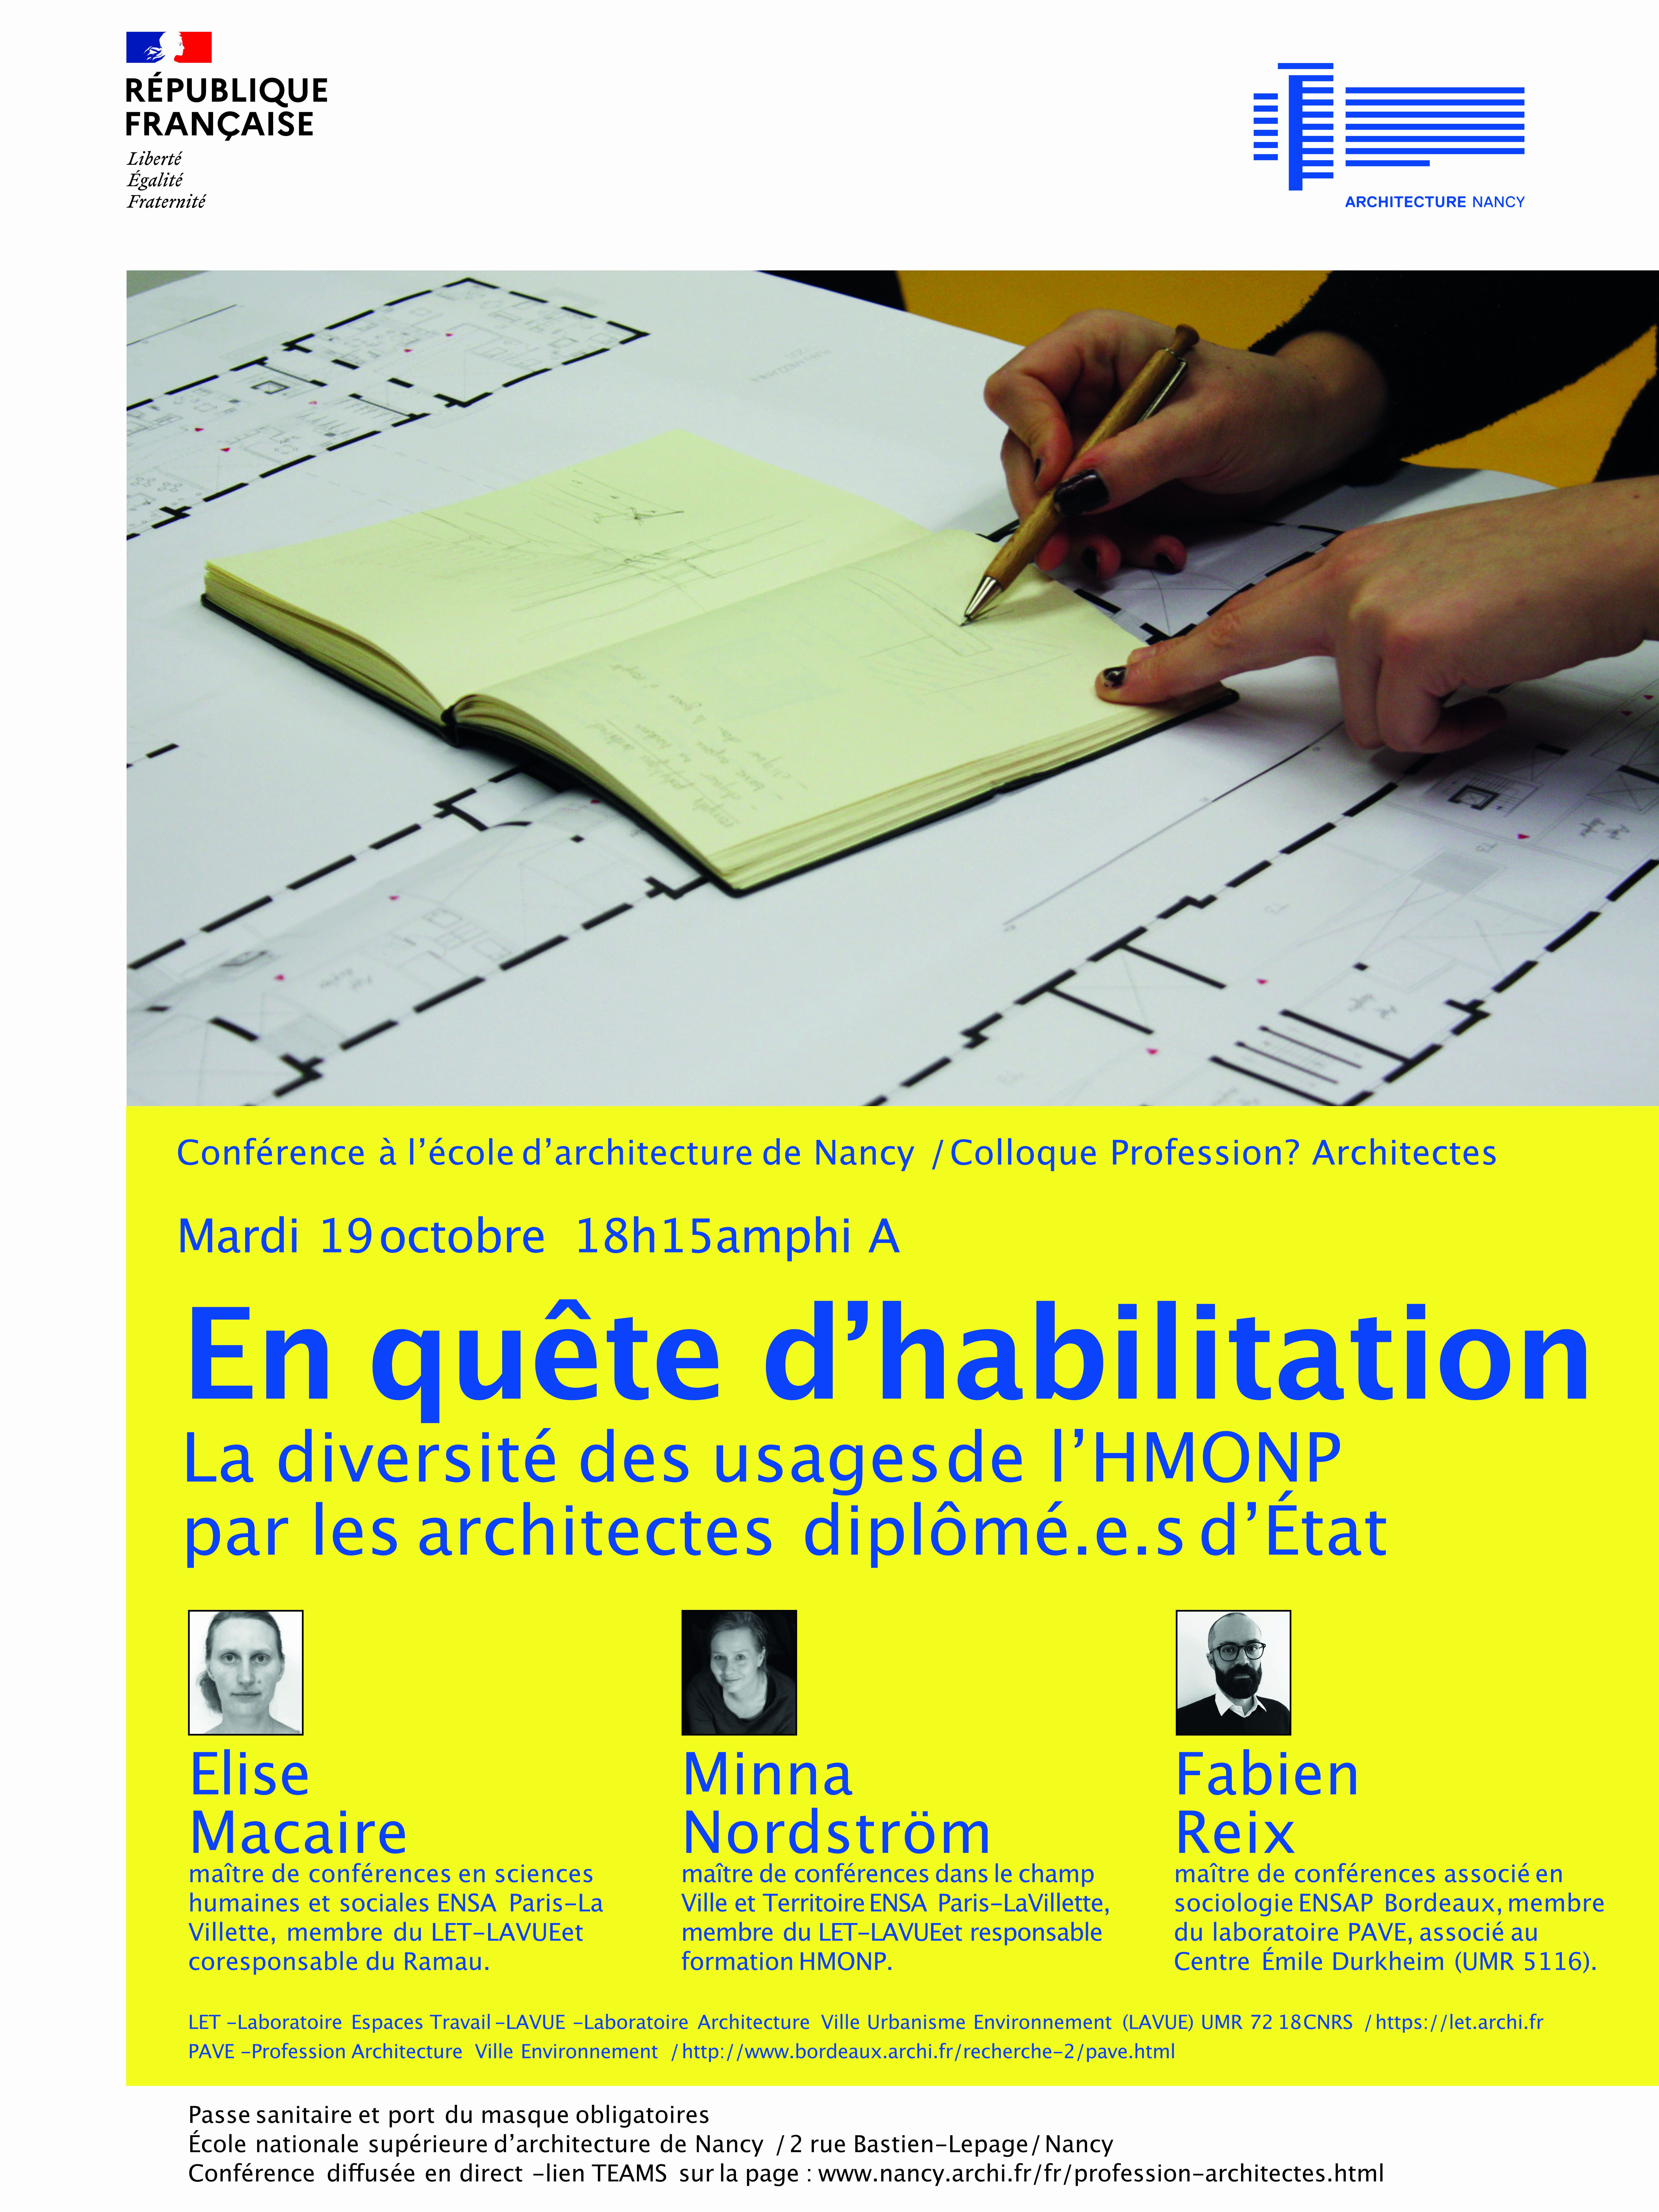 19/10/2021 - Conférence "EN QUÊTE D'HABILITATION La diversité des usages de l'HMONP par les architectes diplômé.e.s d'Etat"